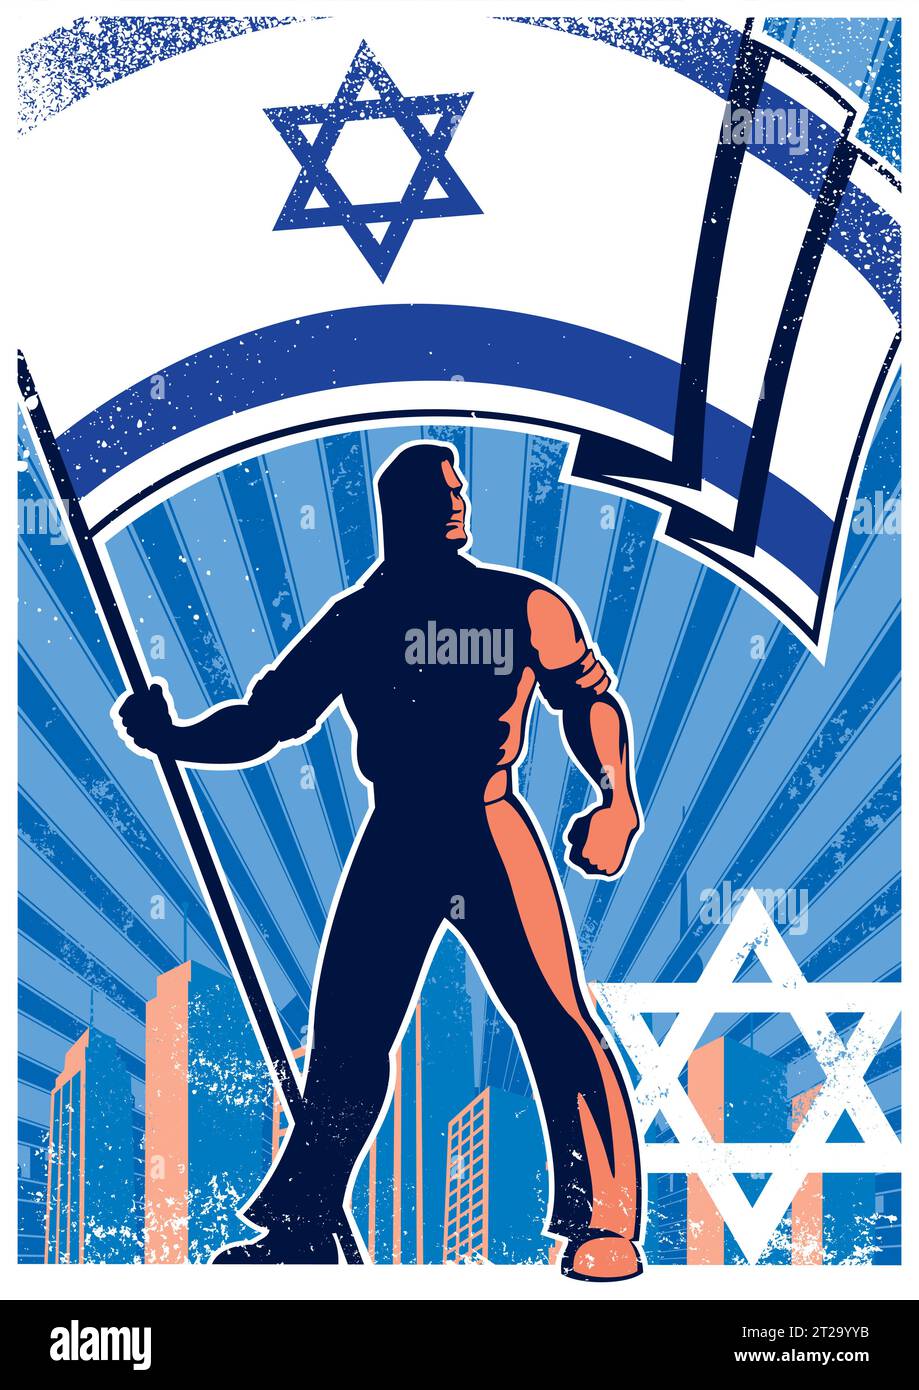 Poster in stile vintage di uomo forte che regge la bandiera israeliana, adagiato sullo sfondo del paesaggio urbano con vivaci tonalità e texture blu. Illustrazione Vettoriale